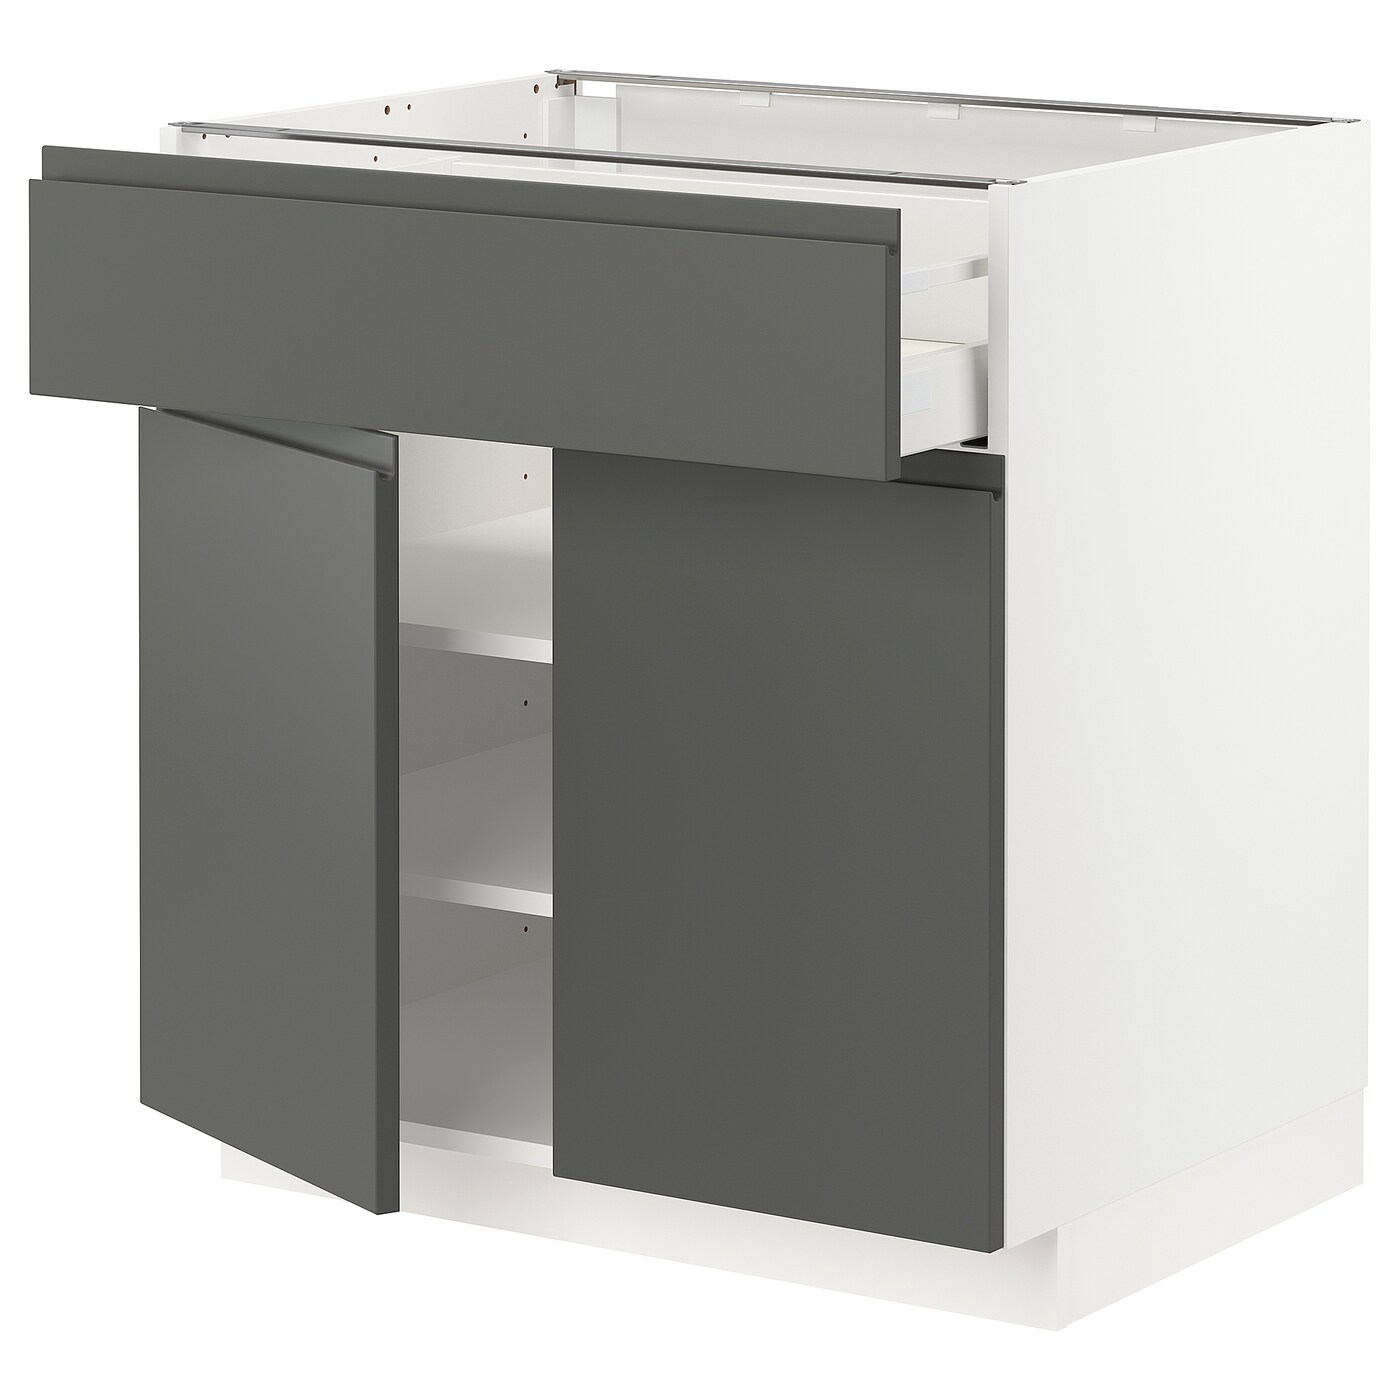 Напольный кухонный шкаф  - IKEA METOD MAXIMERA, 88x62x80см, белый/темно-серый, МЕТОД МАКСИМЕРА ИКЕА